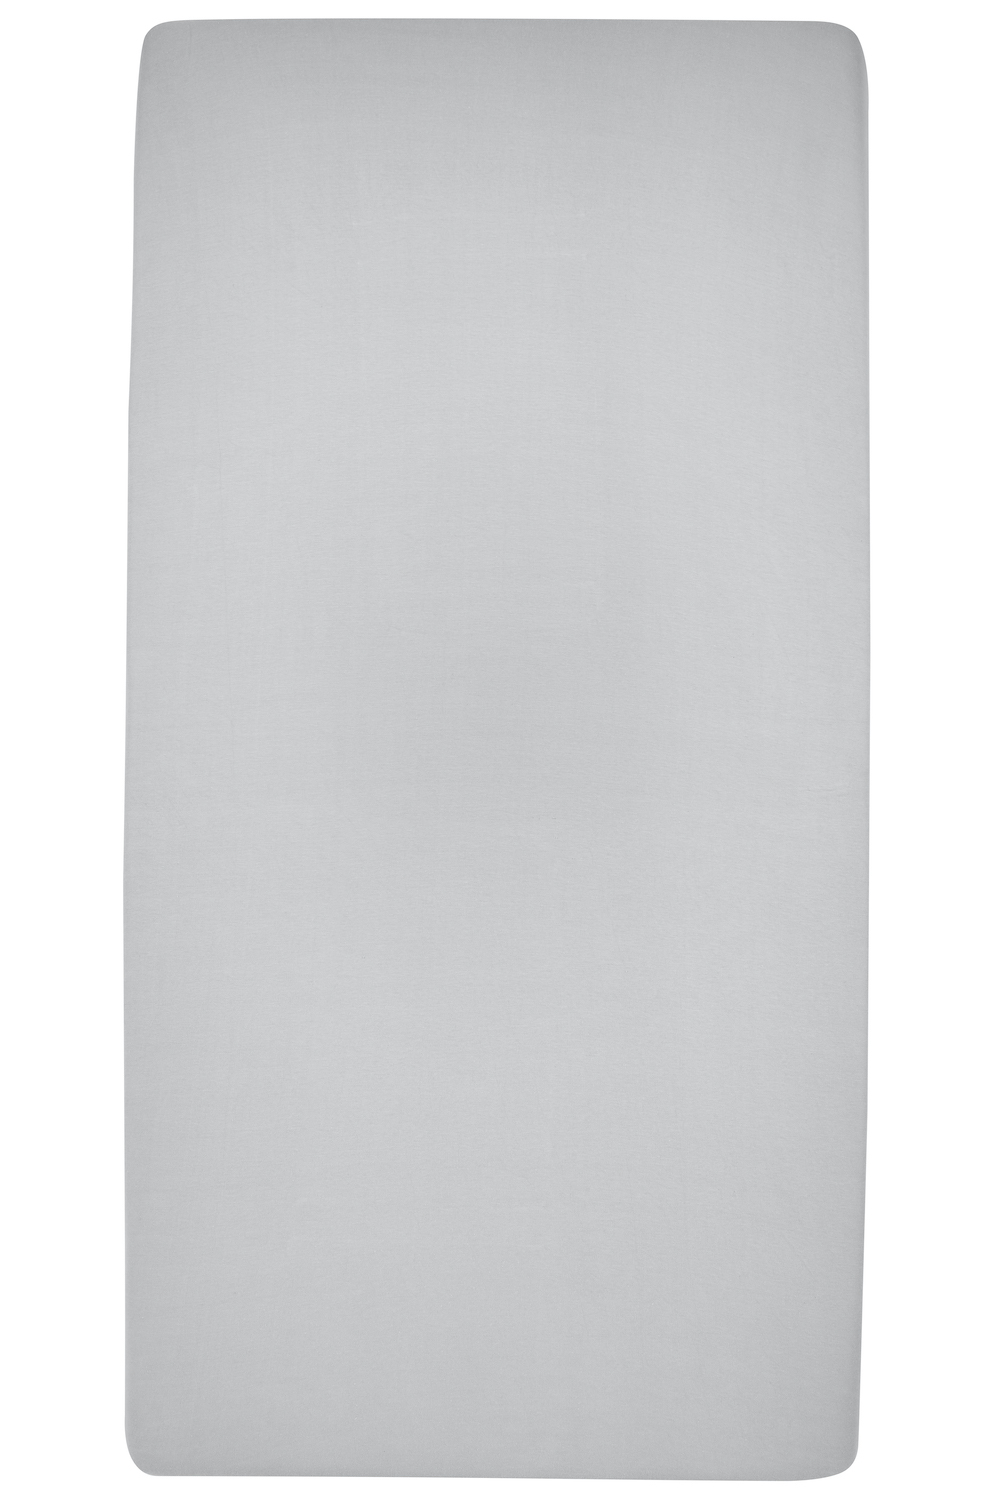 Hoeslaken twijfelaar Uni - light grey - 120x200cm